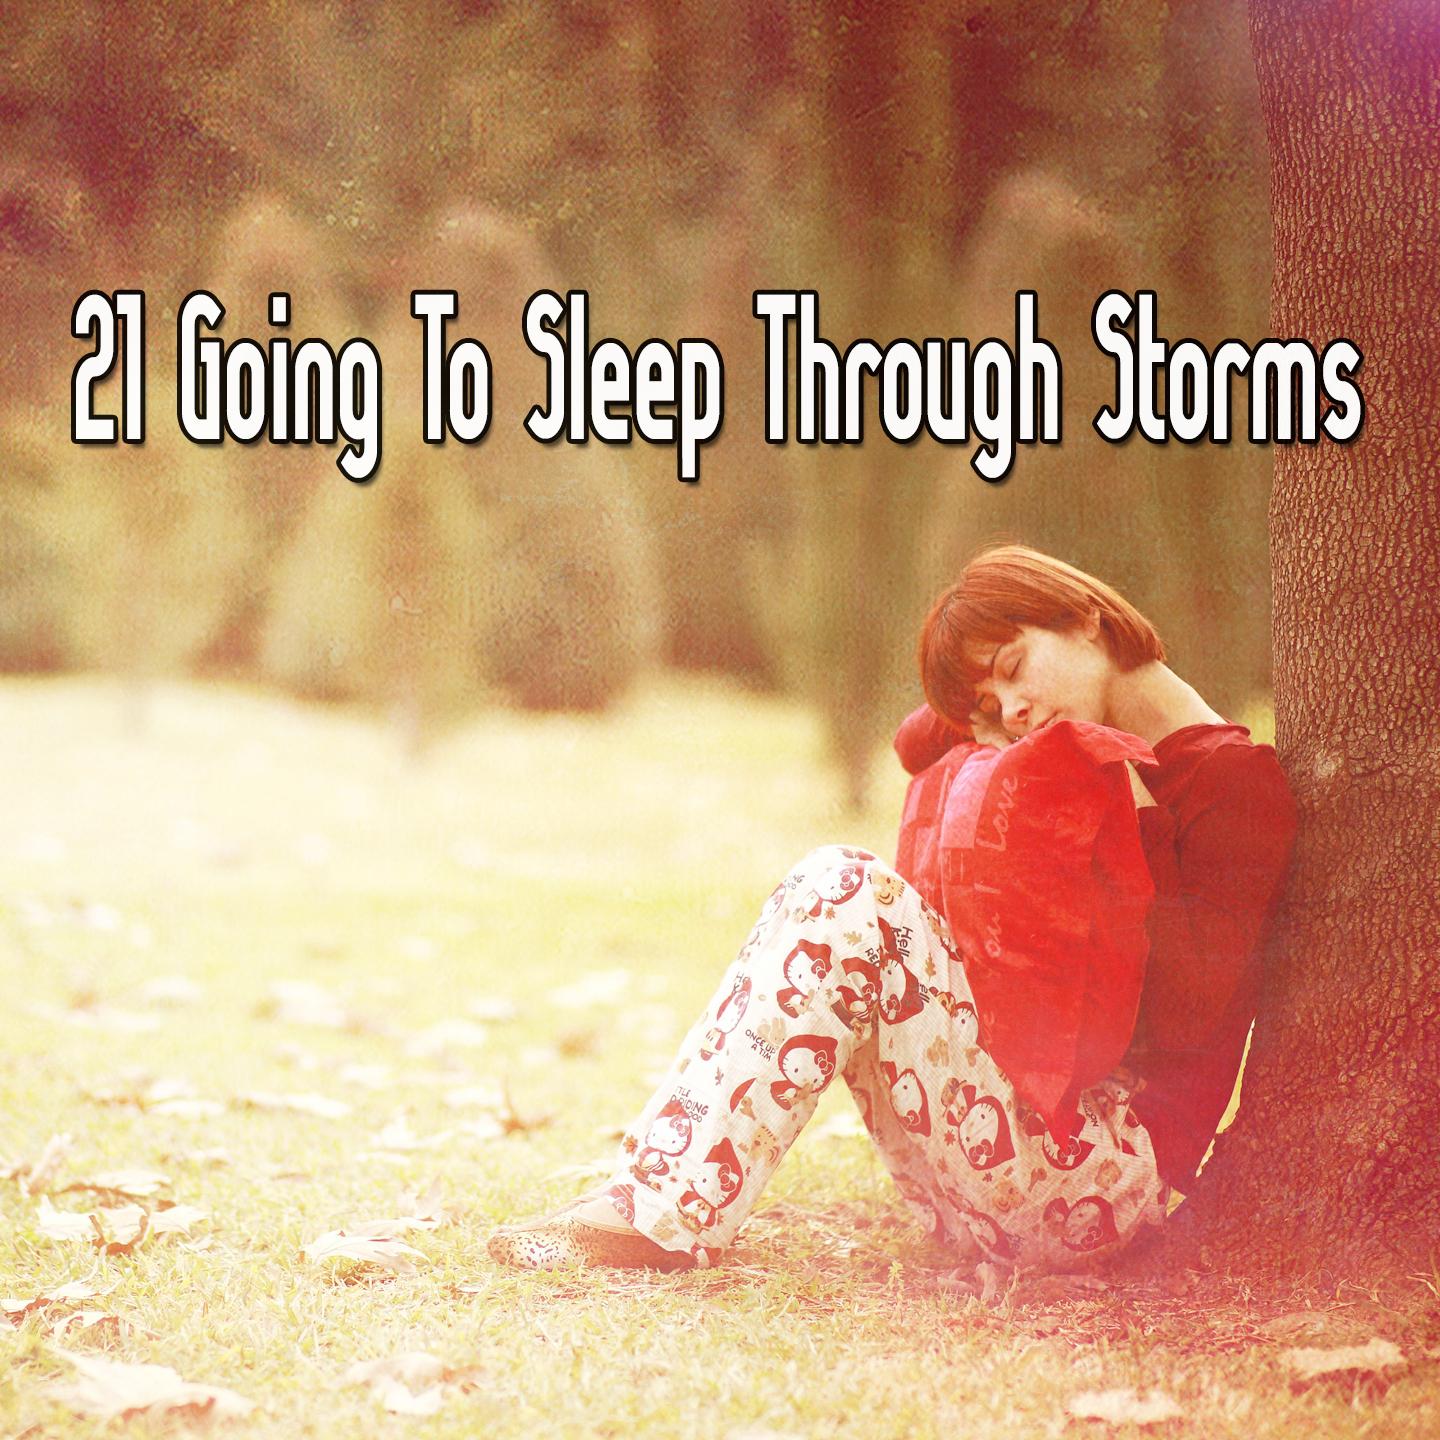 21 Going To Sleep Through Storms